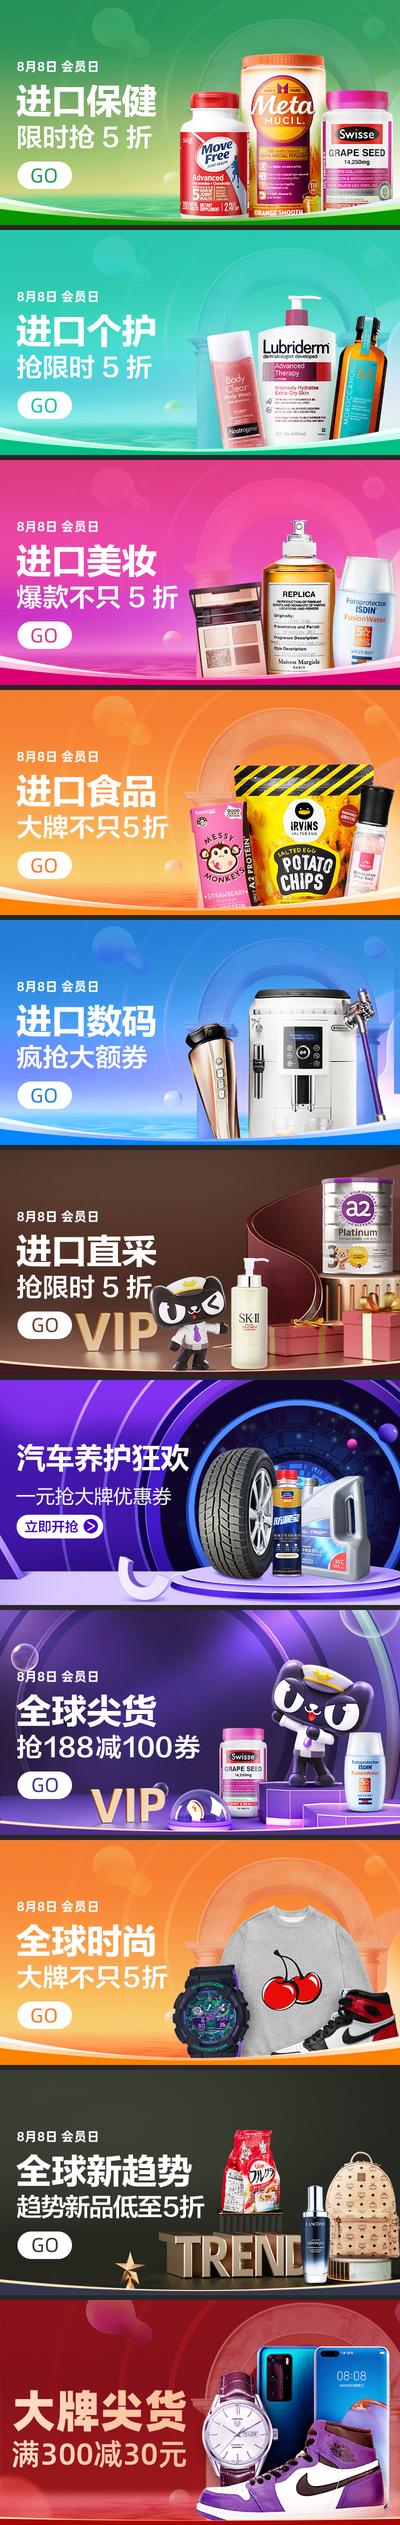 【南门网】电商海报 淘宝海报 banner 保健 美妆 进口食品 数码